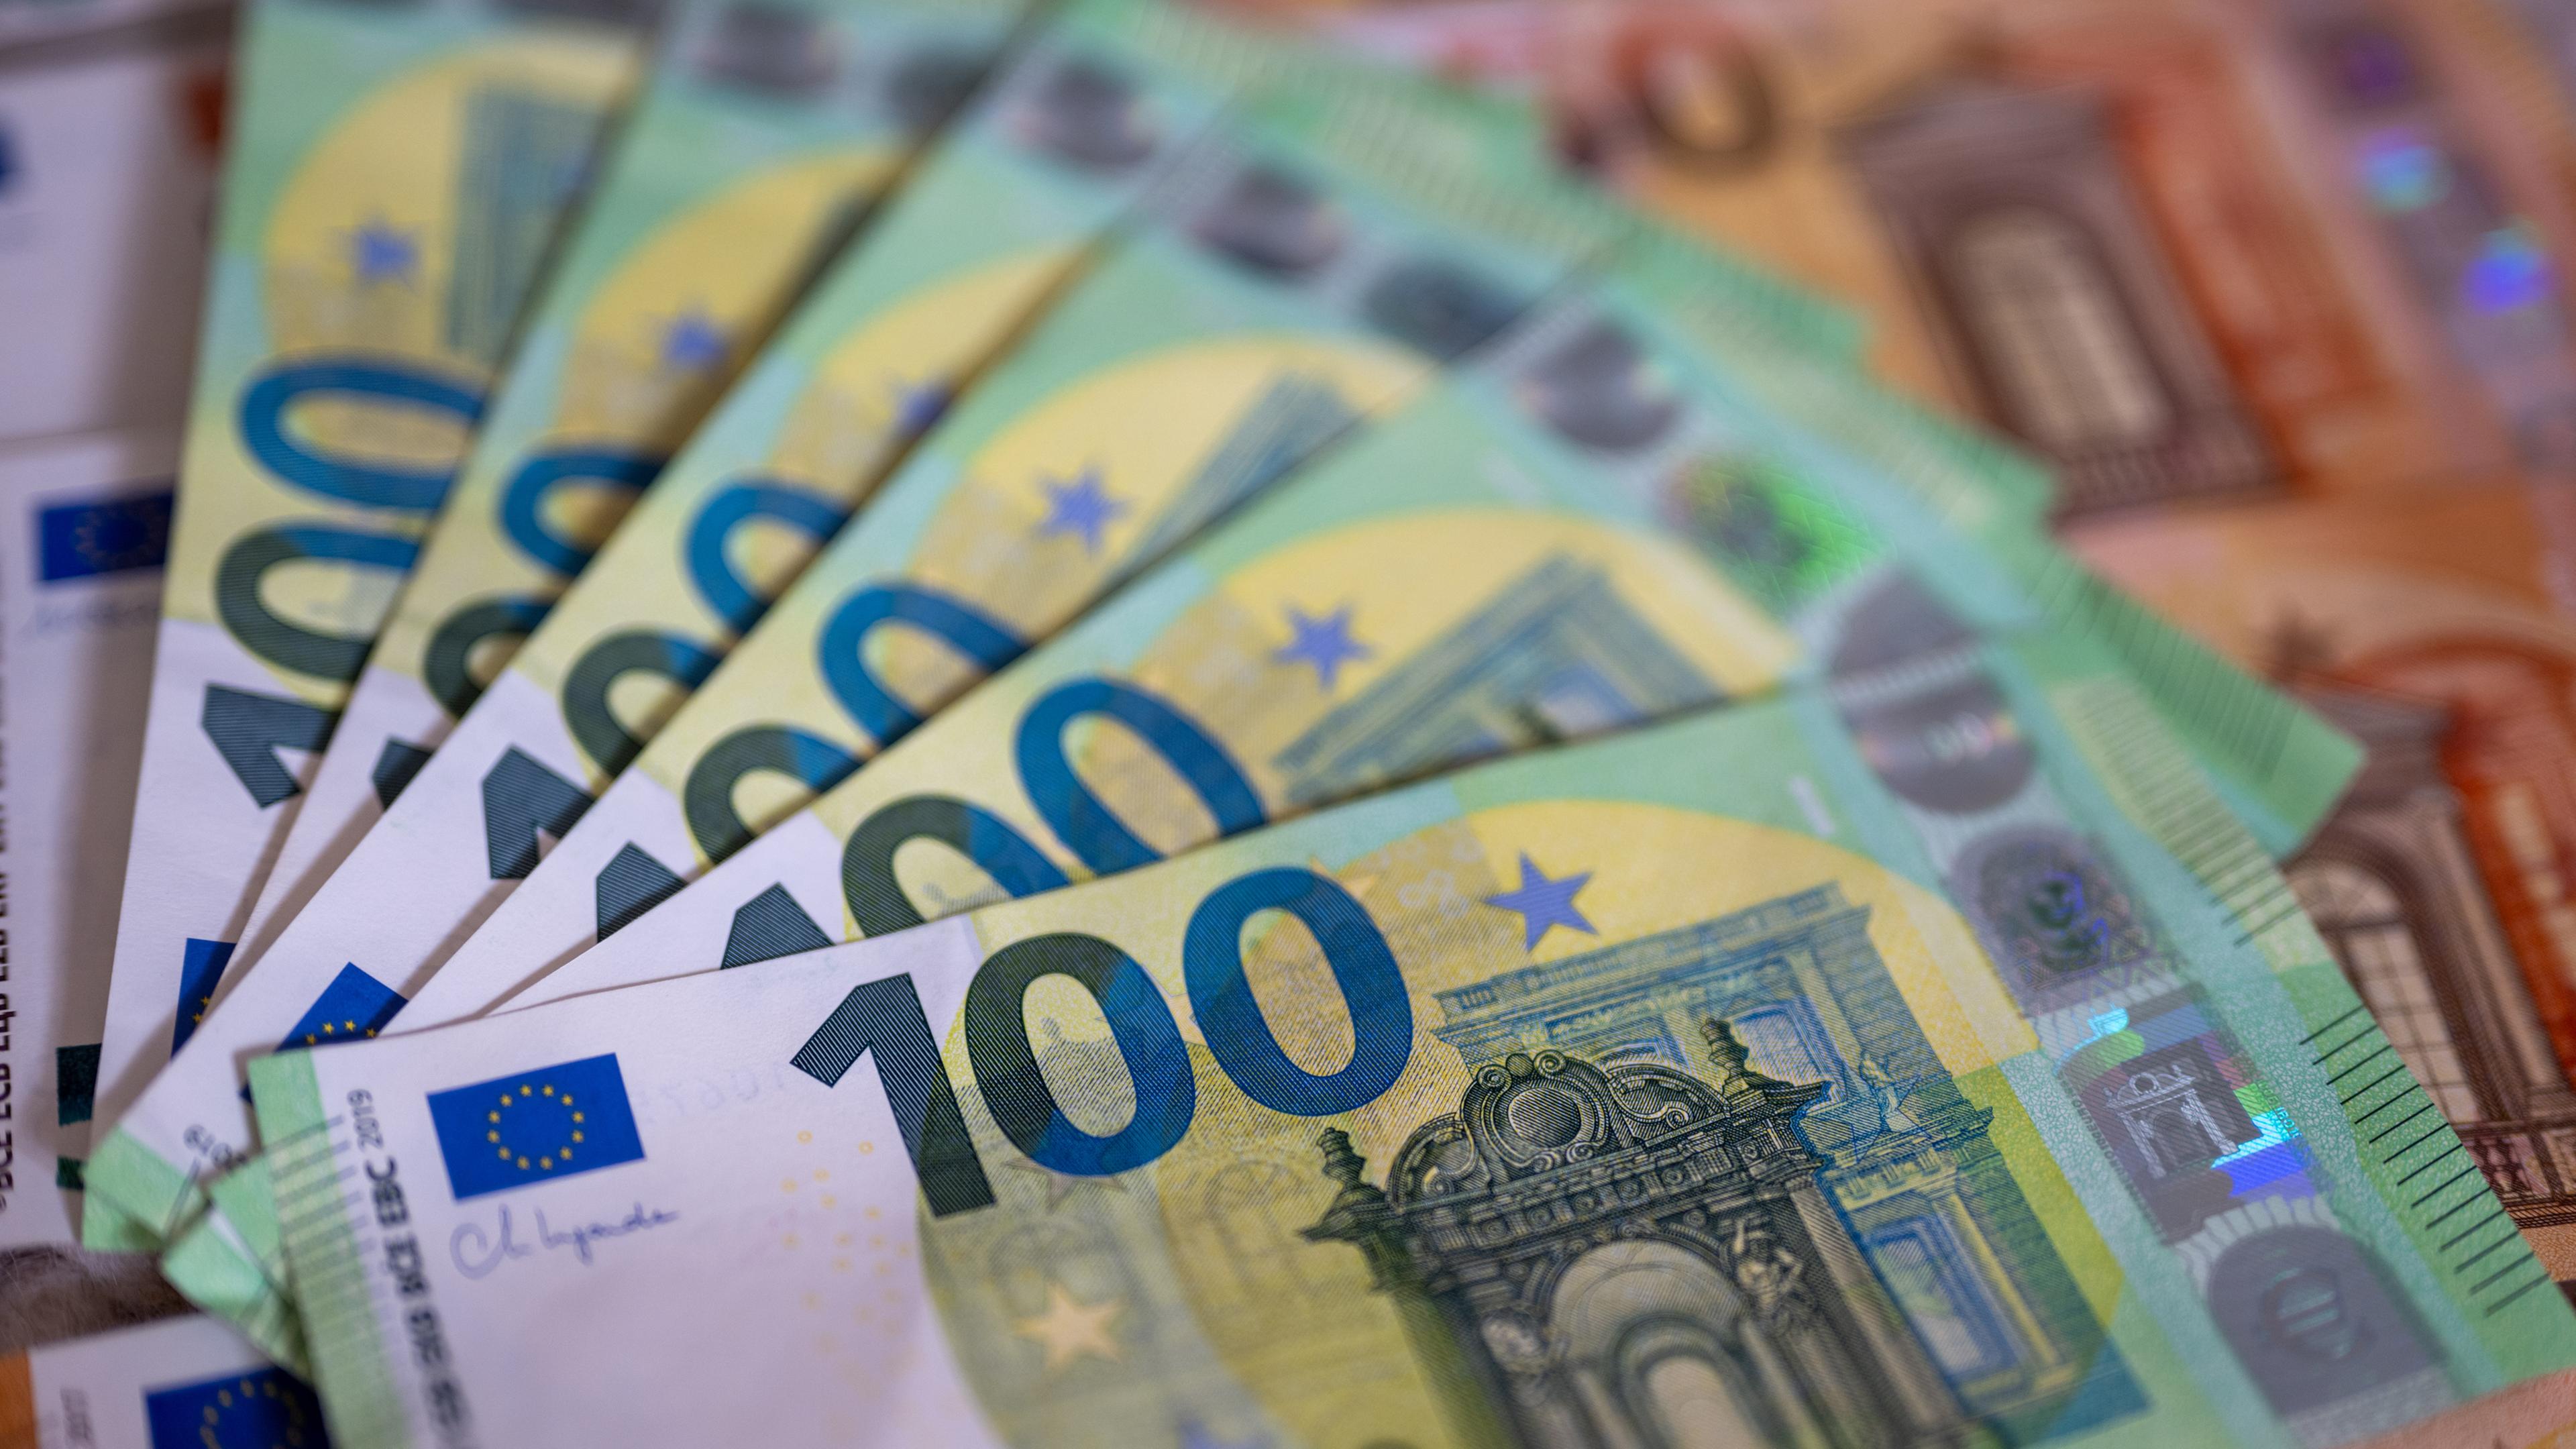 Sechs 100 Euro-Scheine liegen aufgefächert auf 10 Euro-Scheinen.